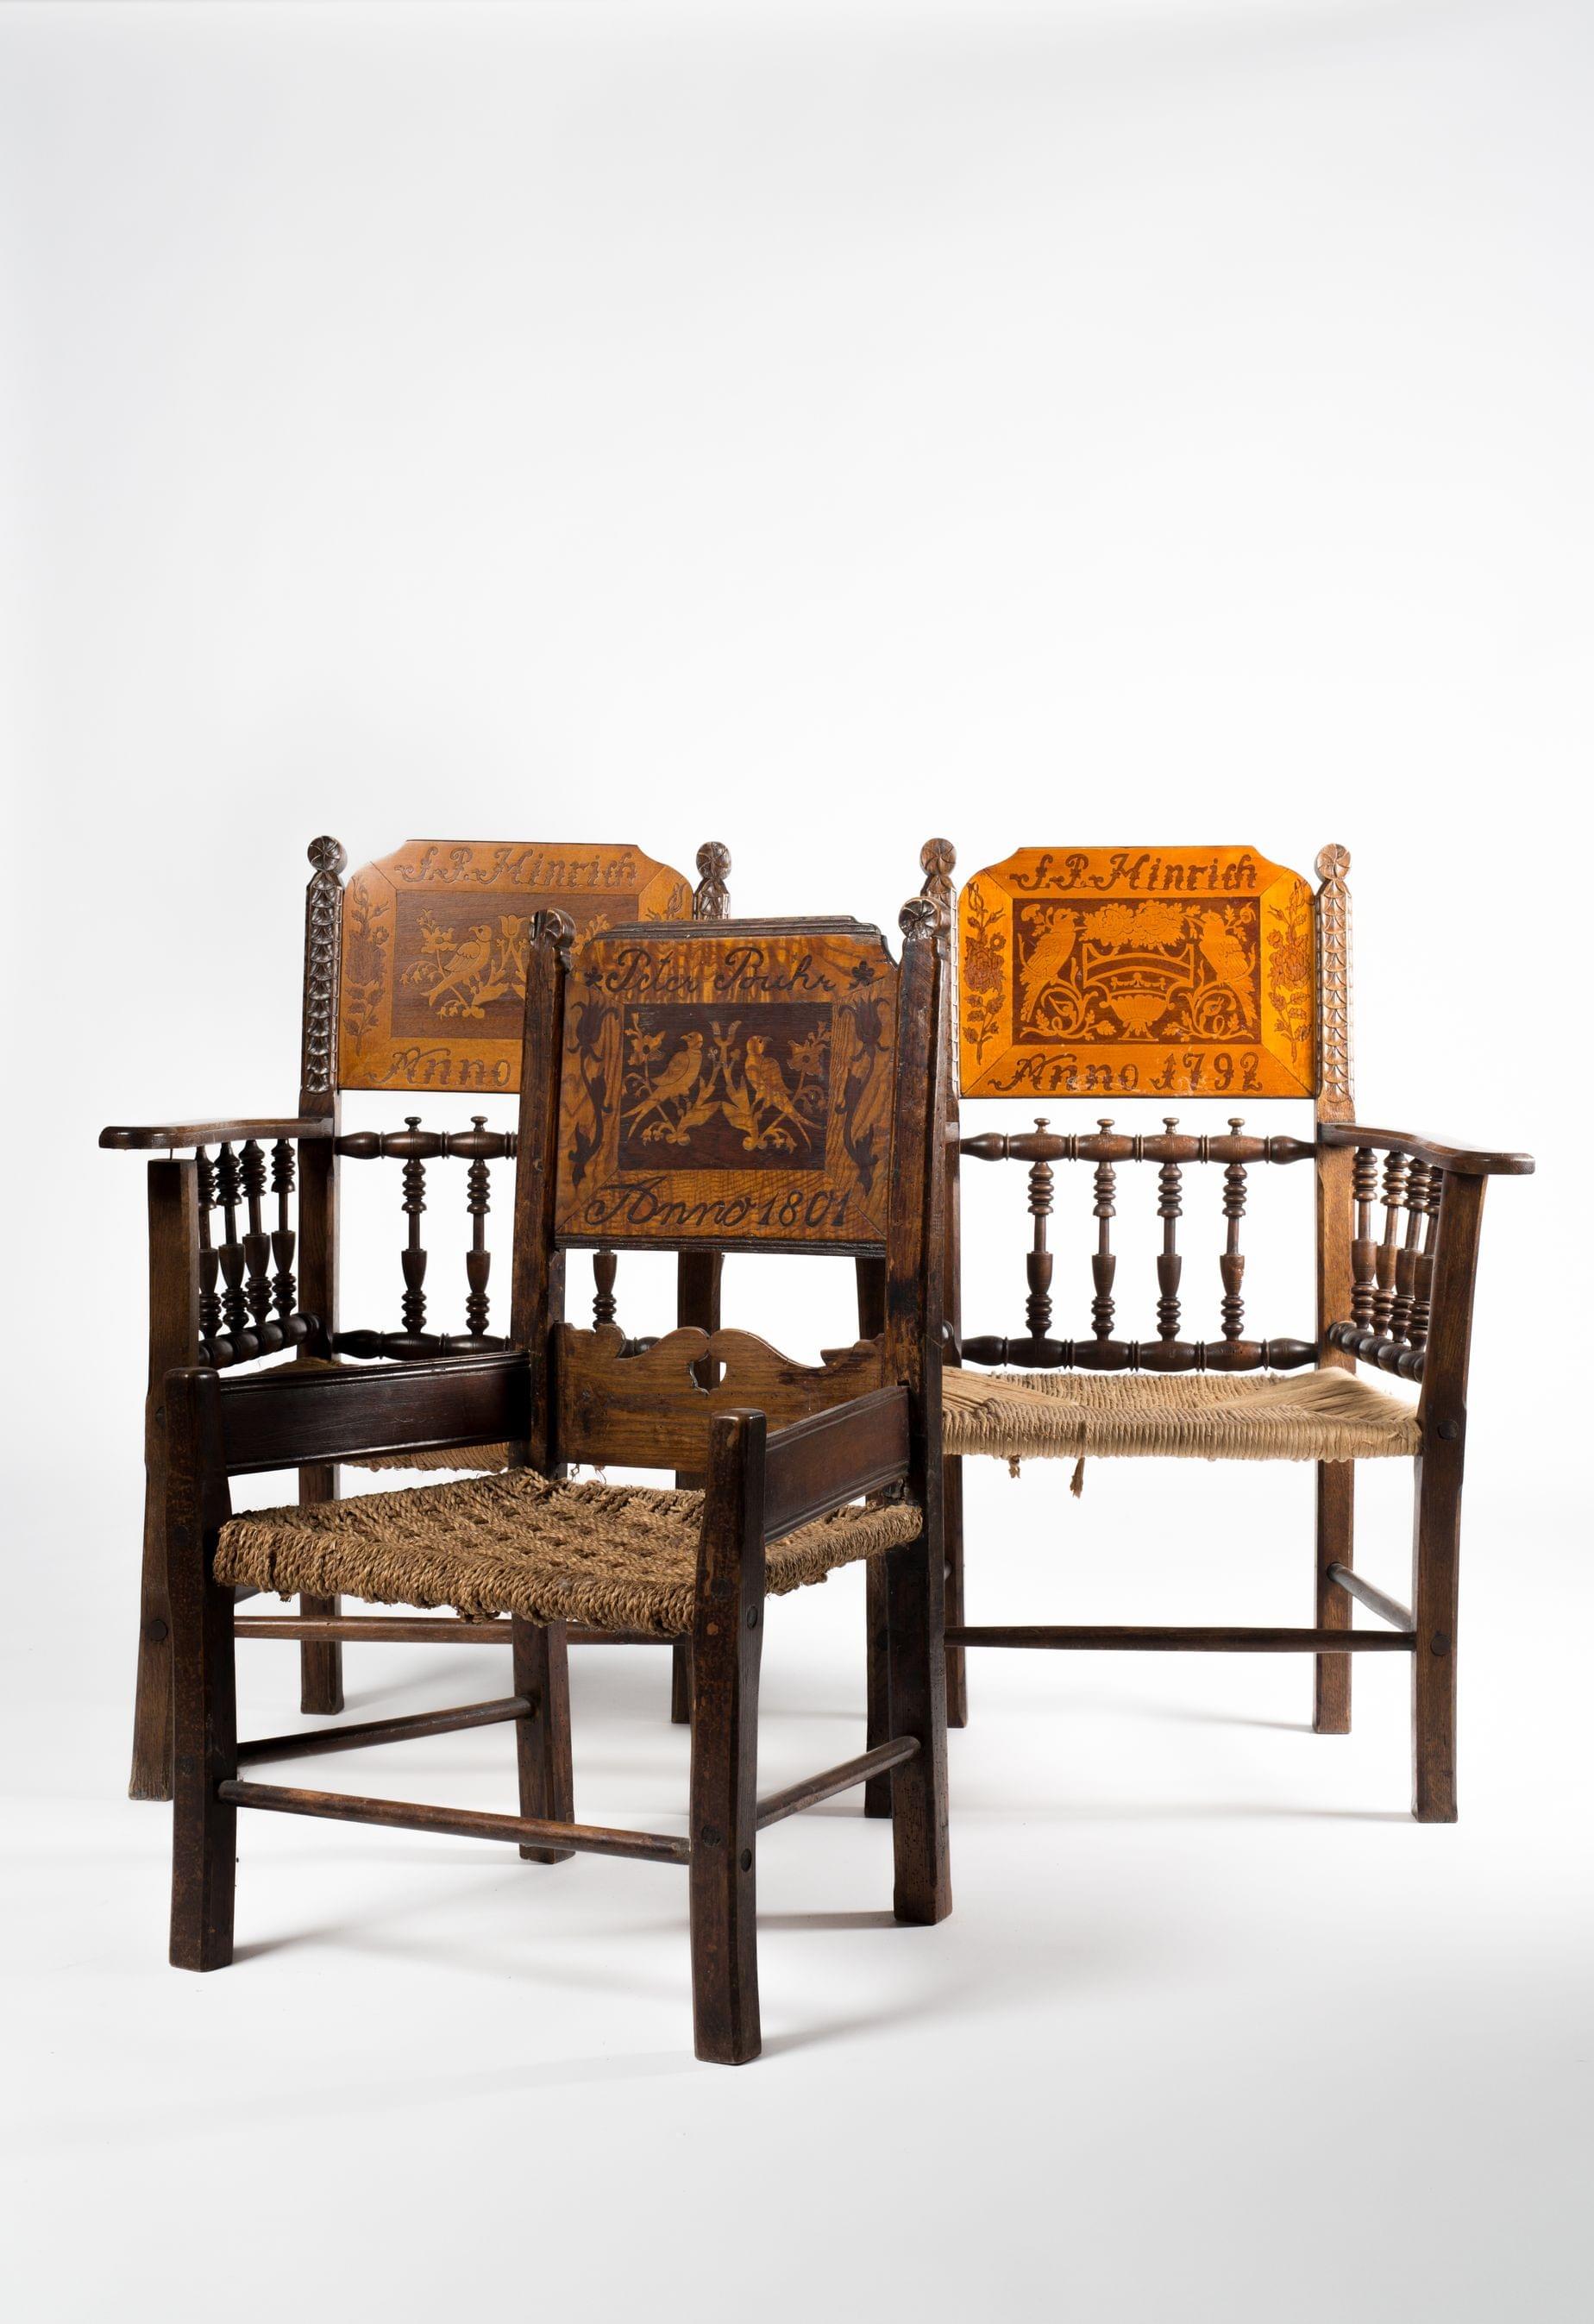 Trois fauteuils autrichiens datés 1792